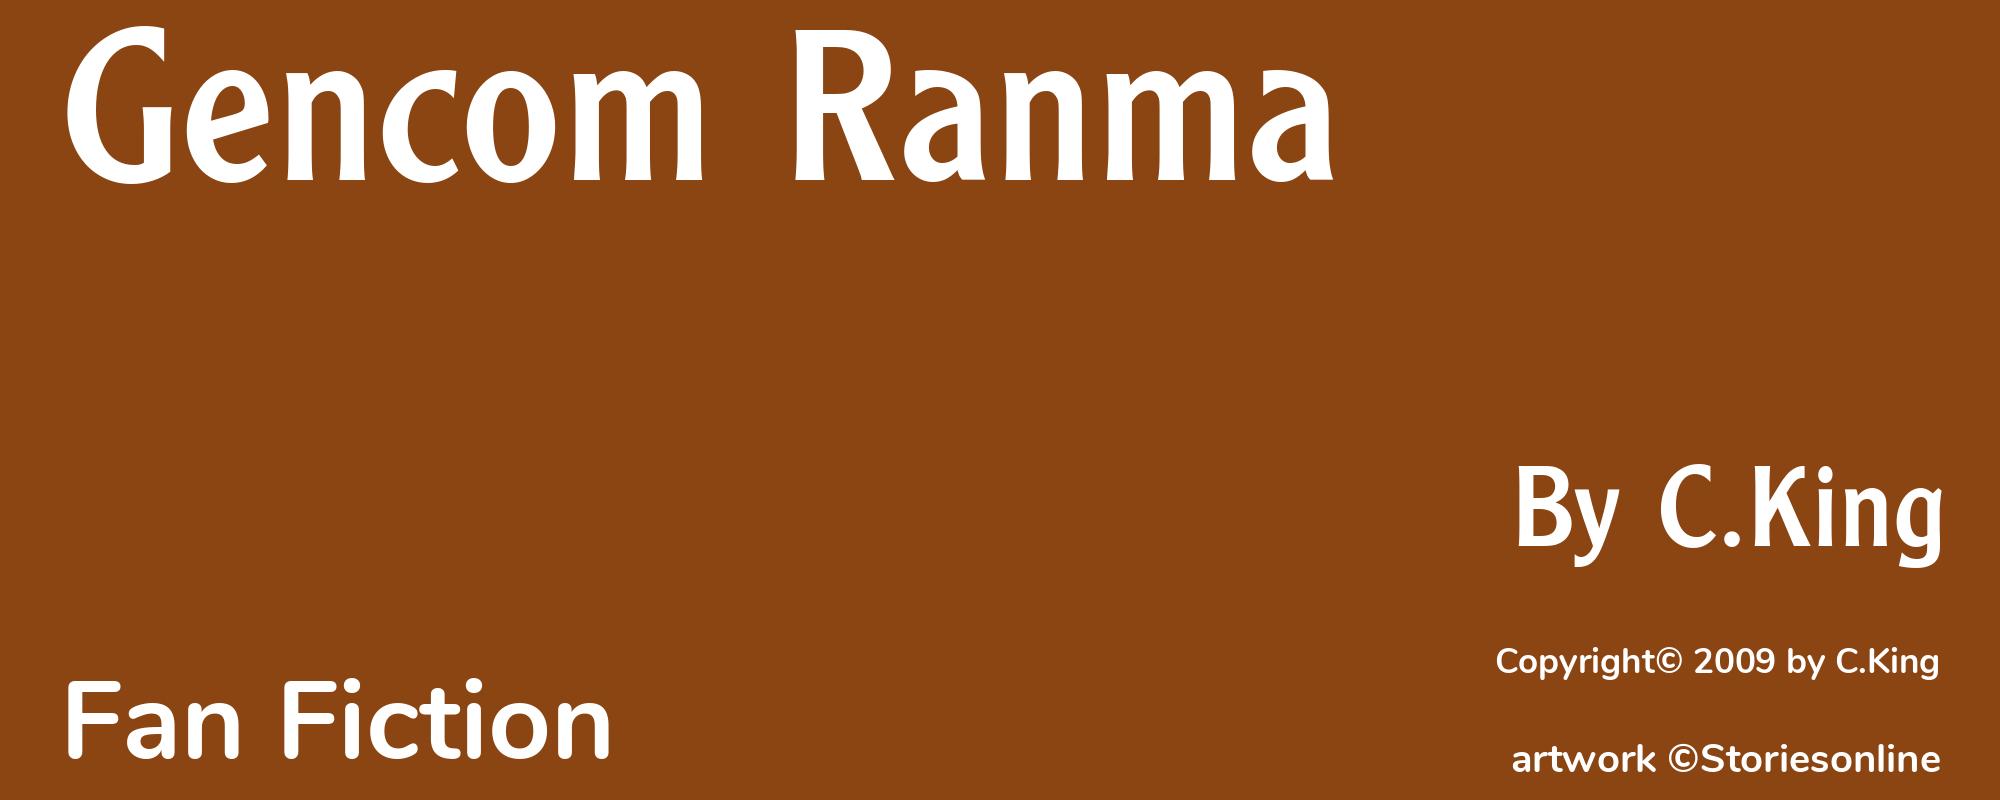 Gencom Ranma - Cover